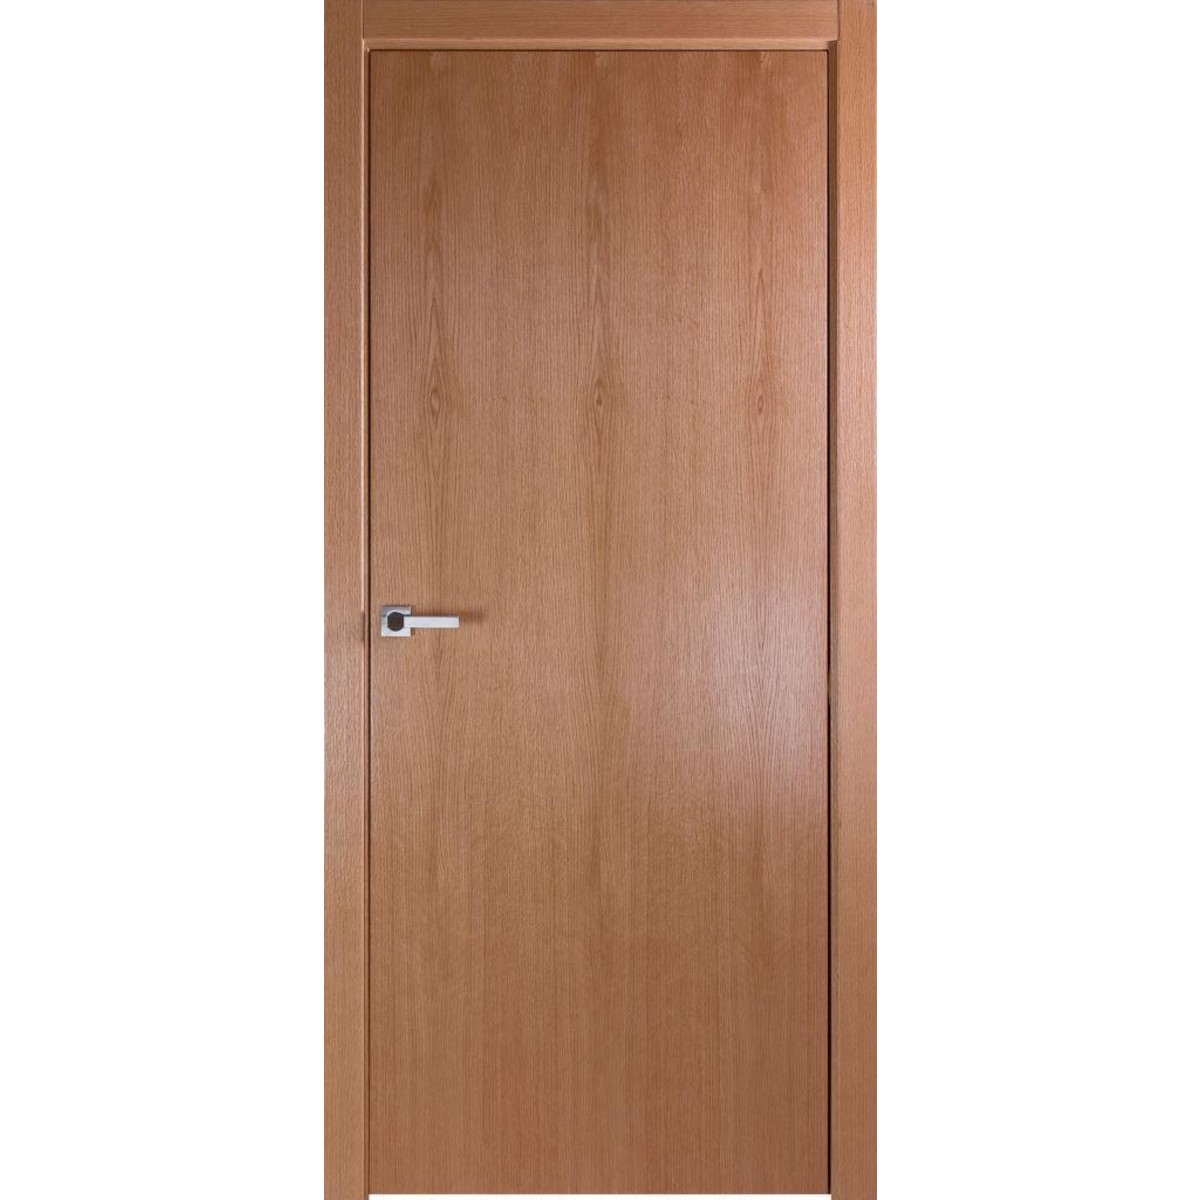 Дверь межкомнатная глухая без замка и петель в комплекте Лофтвуд 1 80x200 см шпон цвет дуб американский